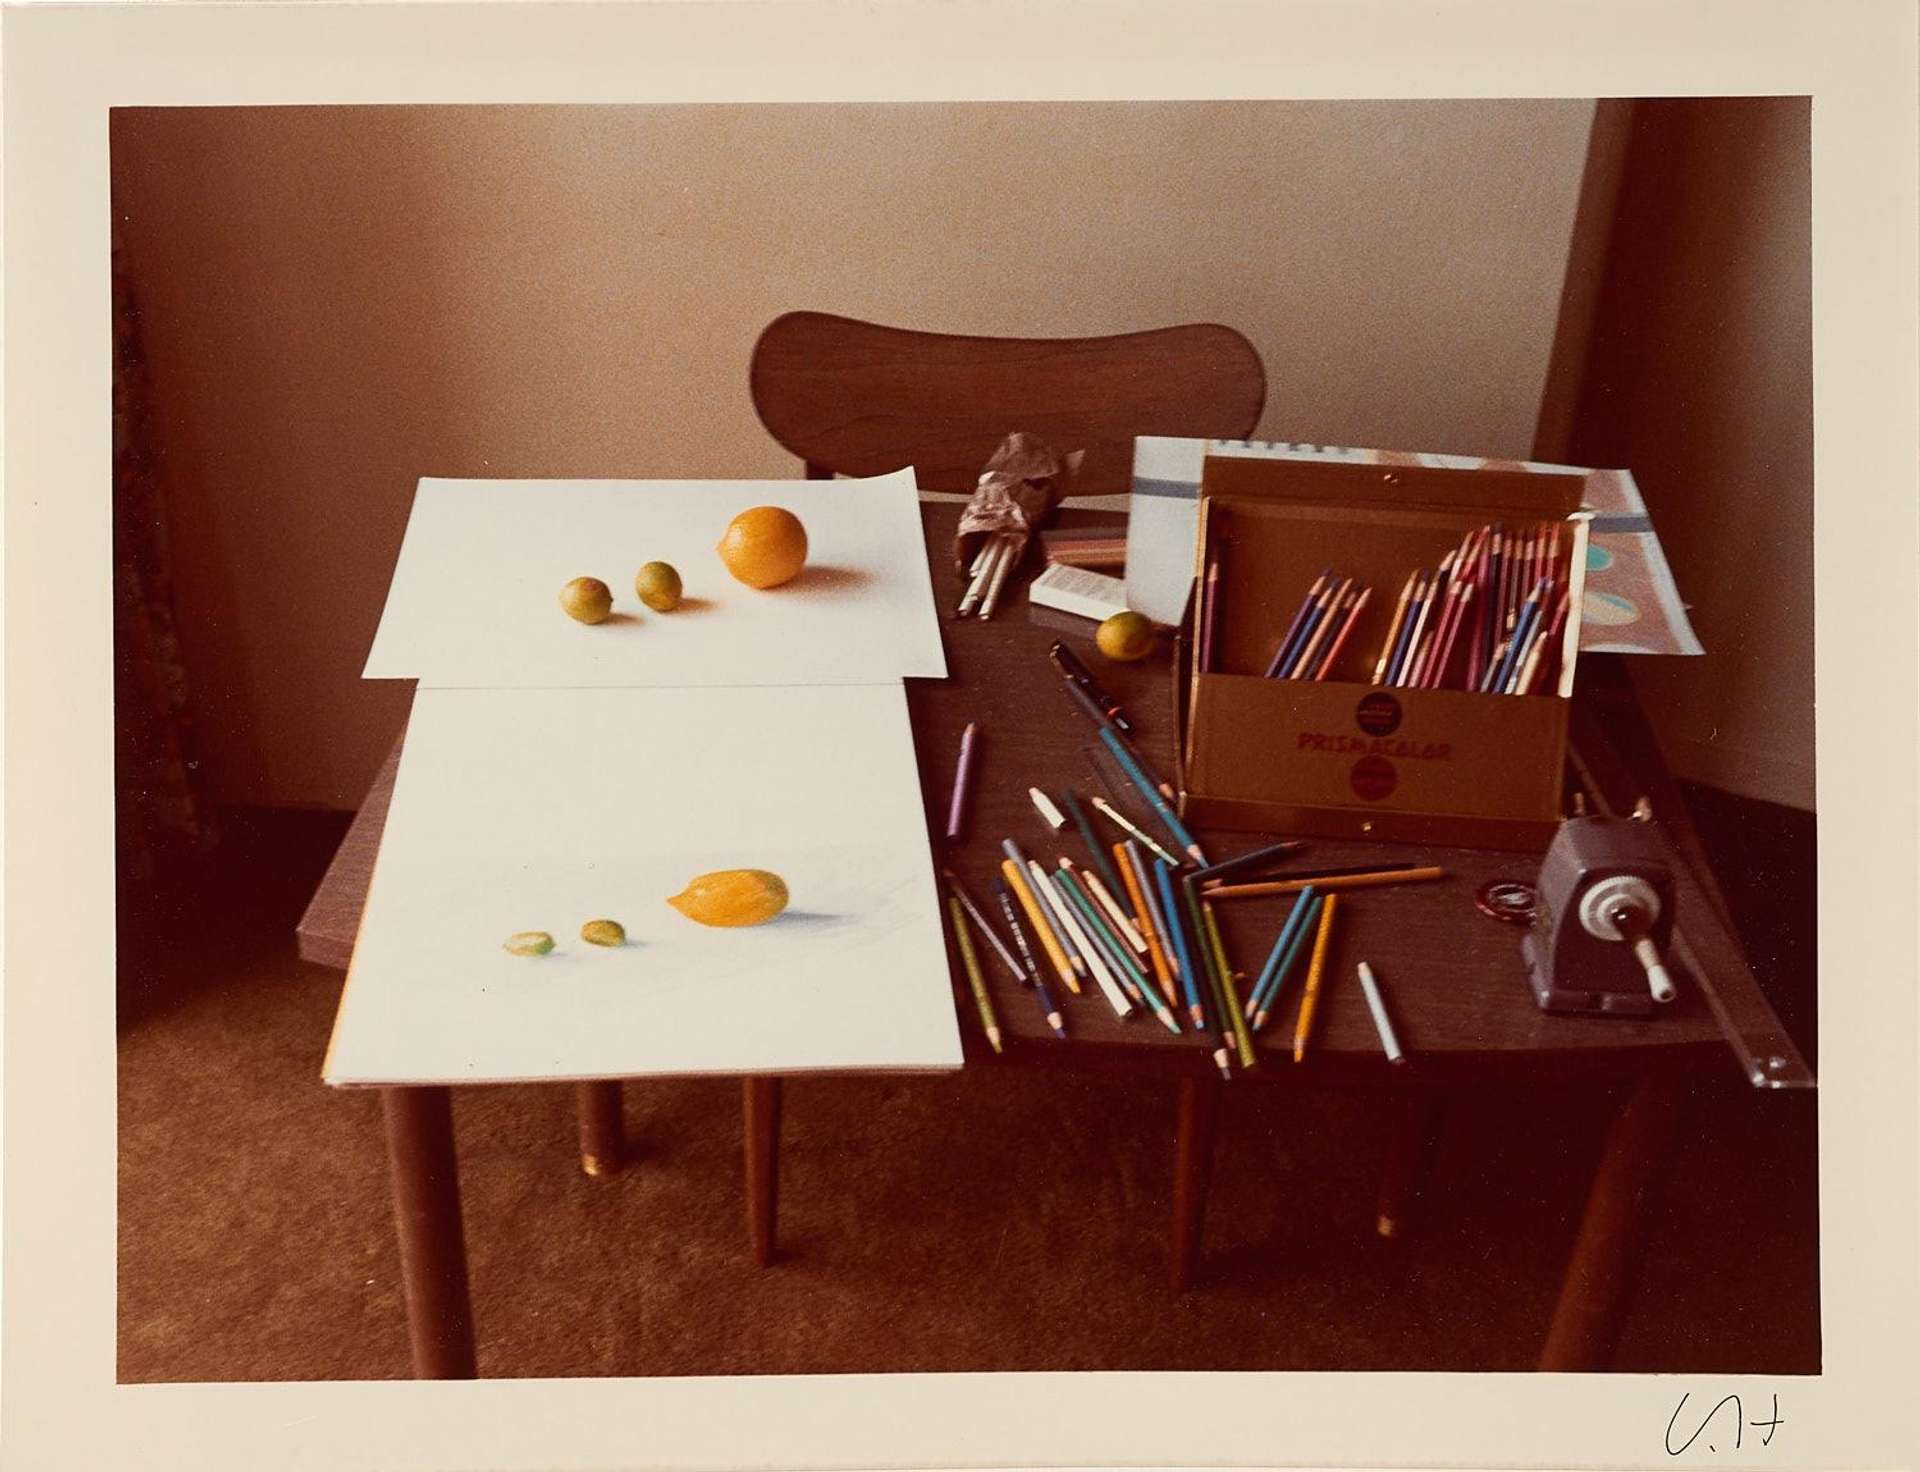 At Rest - Signed Print by David Hockney 1971 - MyArtBroker